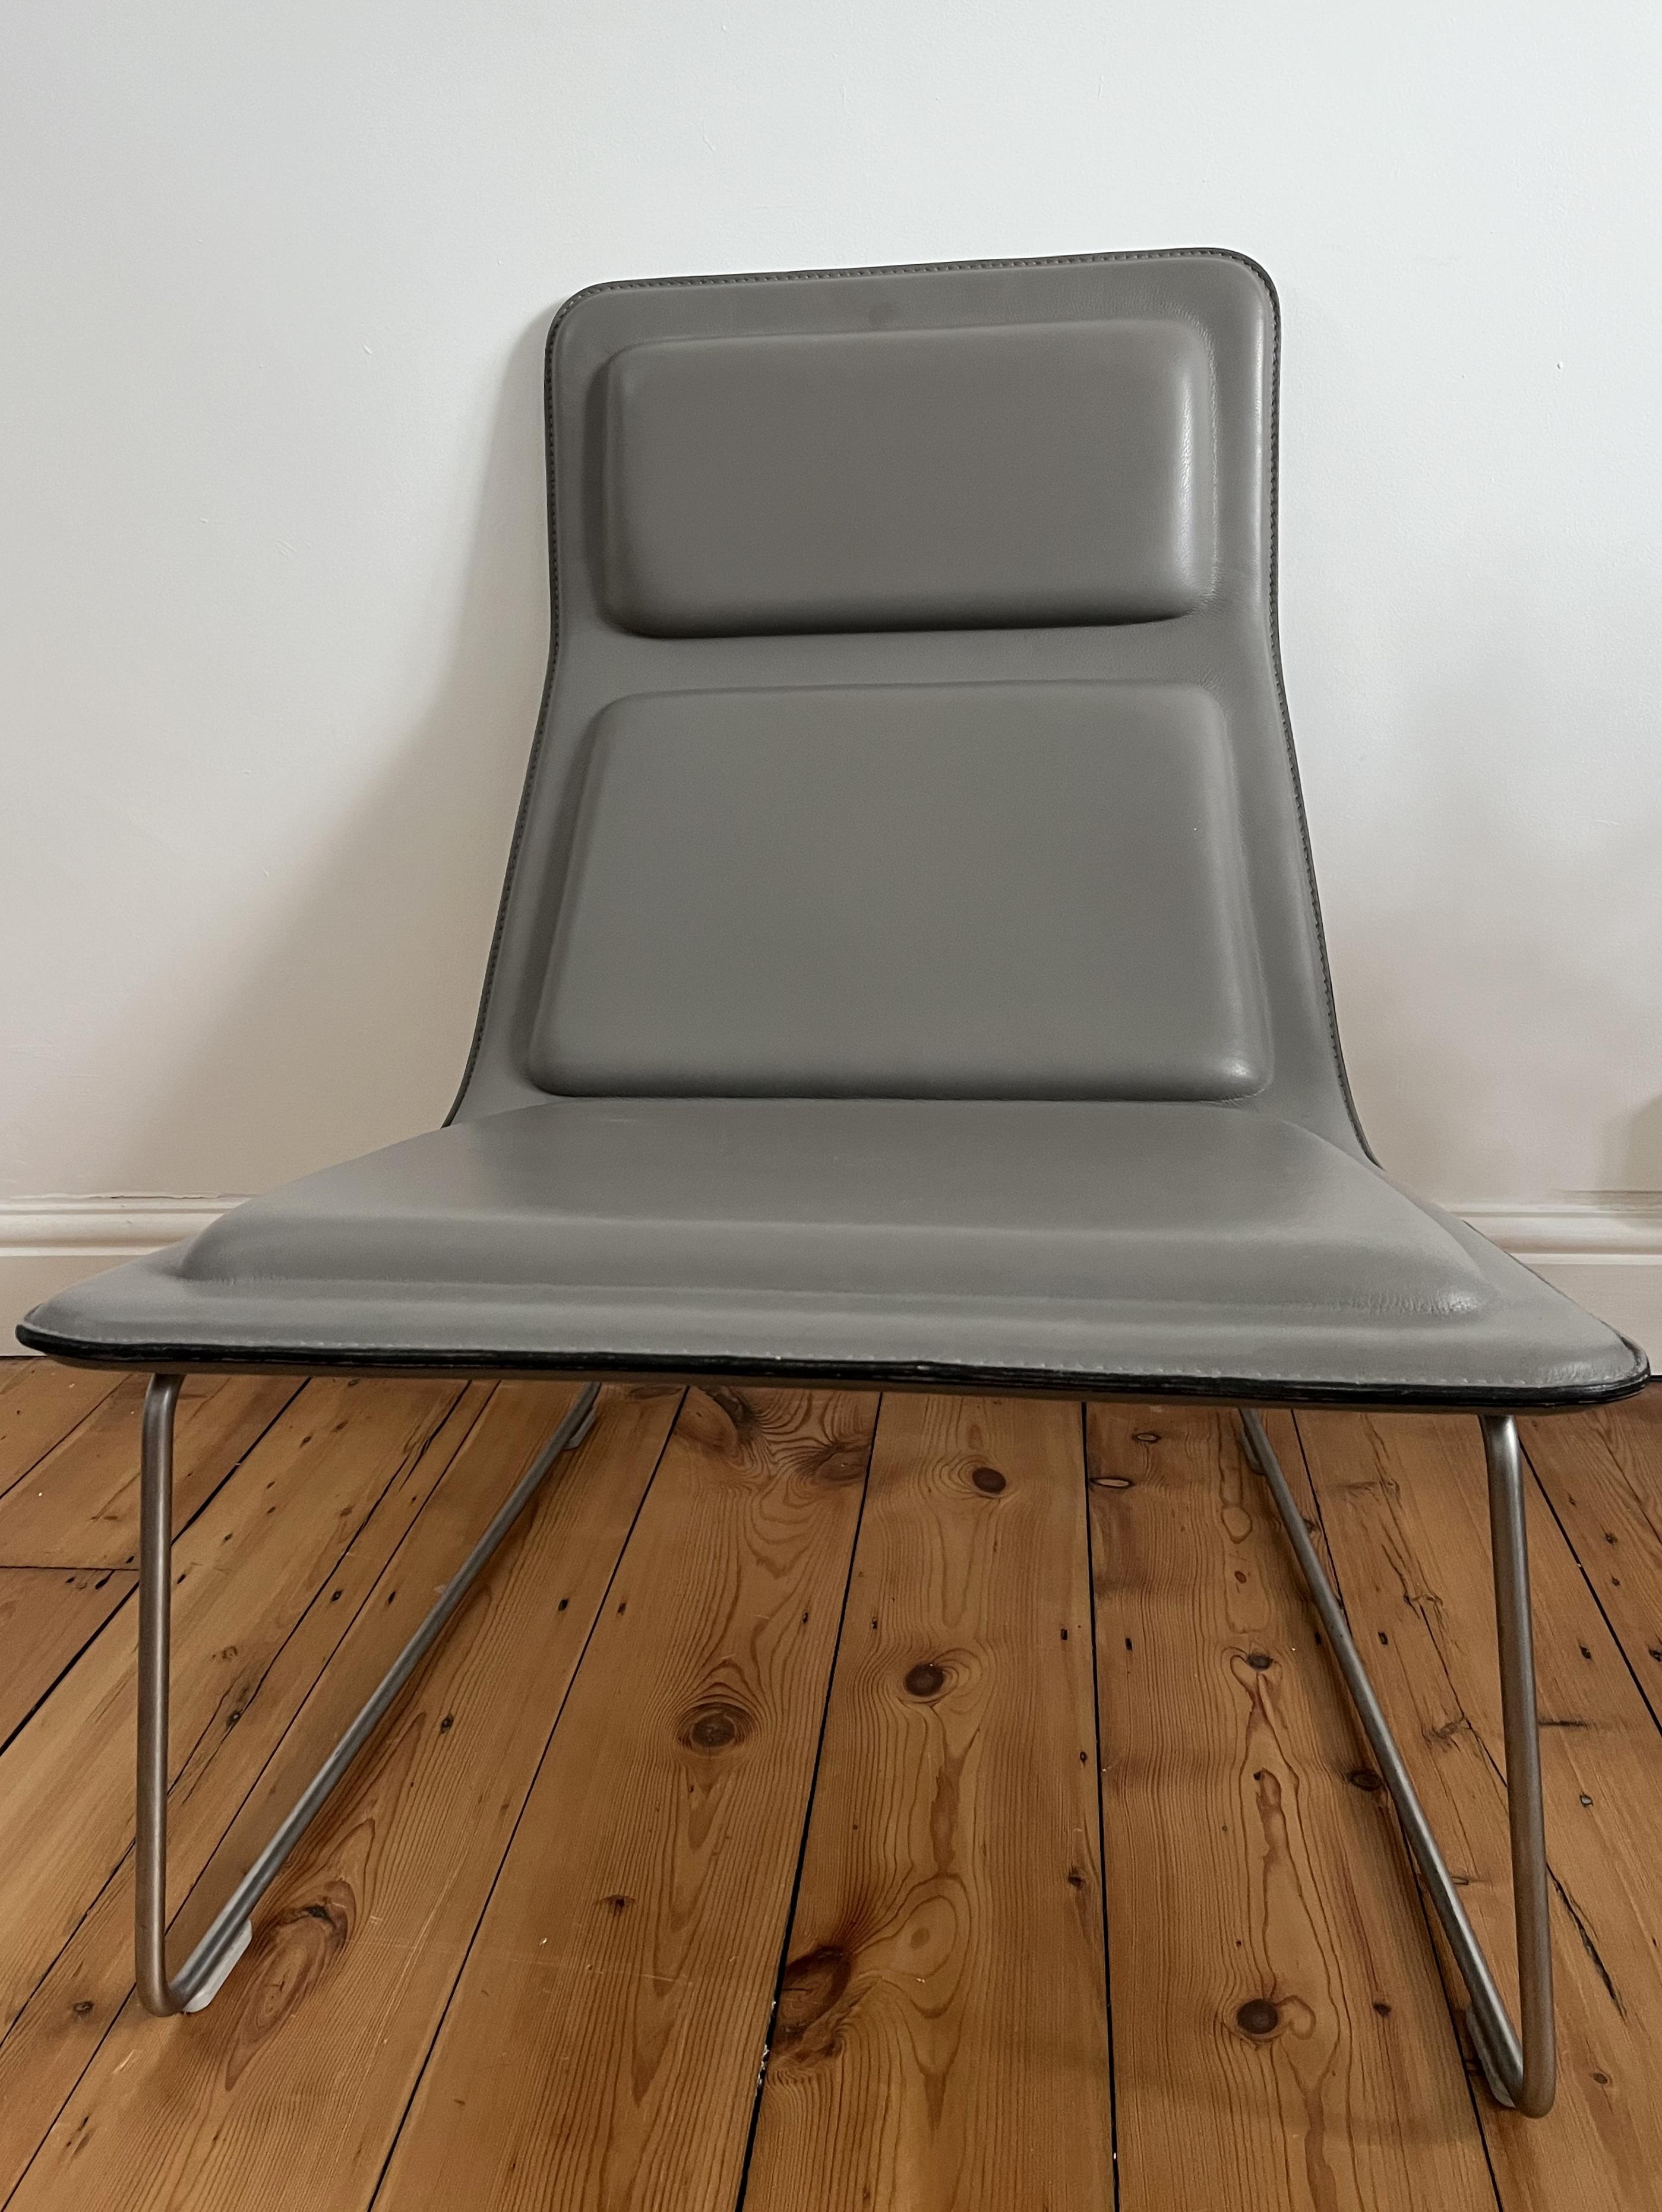 Low Pad Lounge Chair pour Cappellini, conçue par Jasper Morrison en 1999.

La chaise est recouverte de cuir gey et repose sur une base en acier inoxydable satiné.

Tous les patins sont présents et la chaise est en très bon état.

Nous en avons